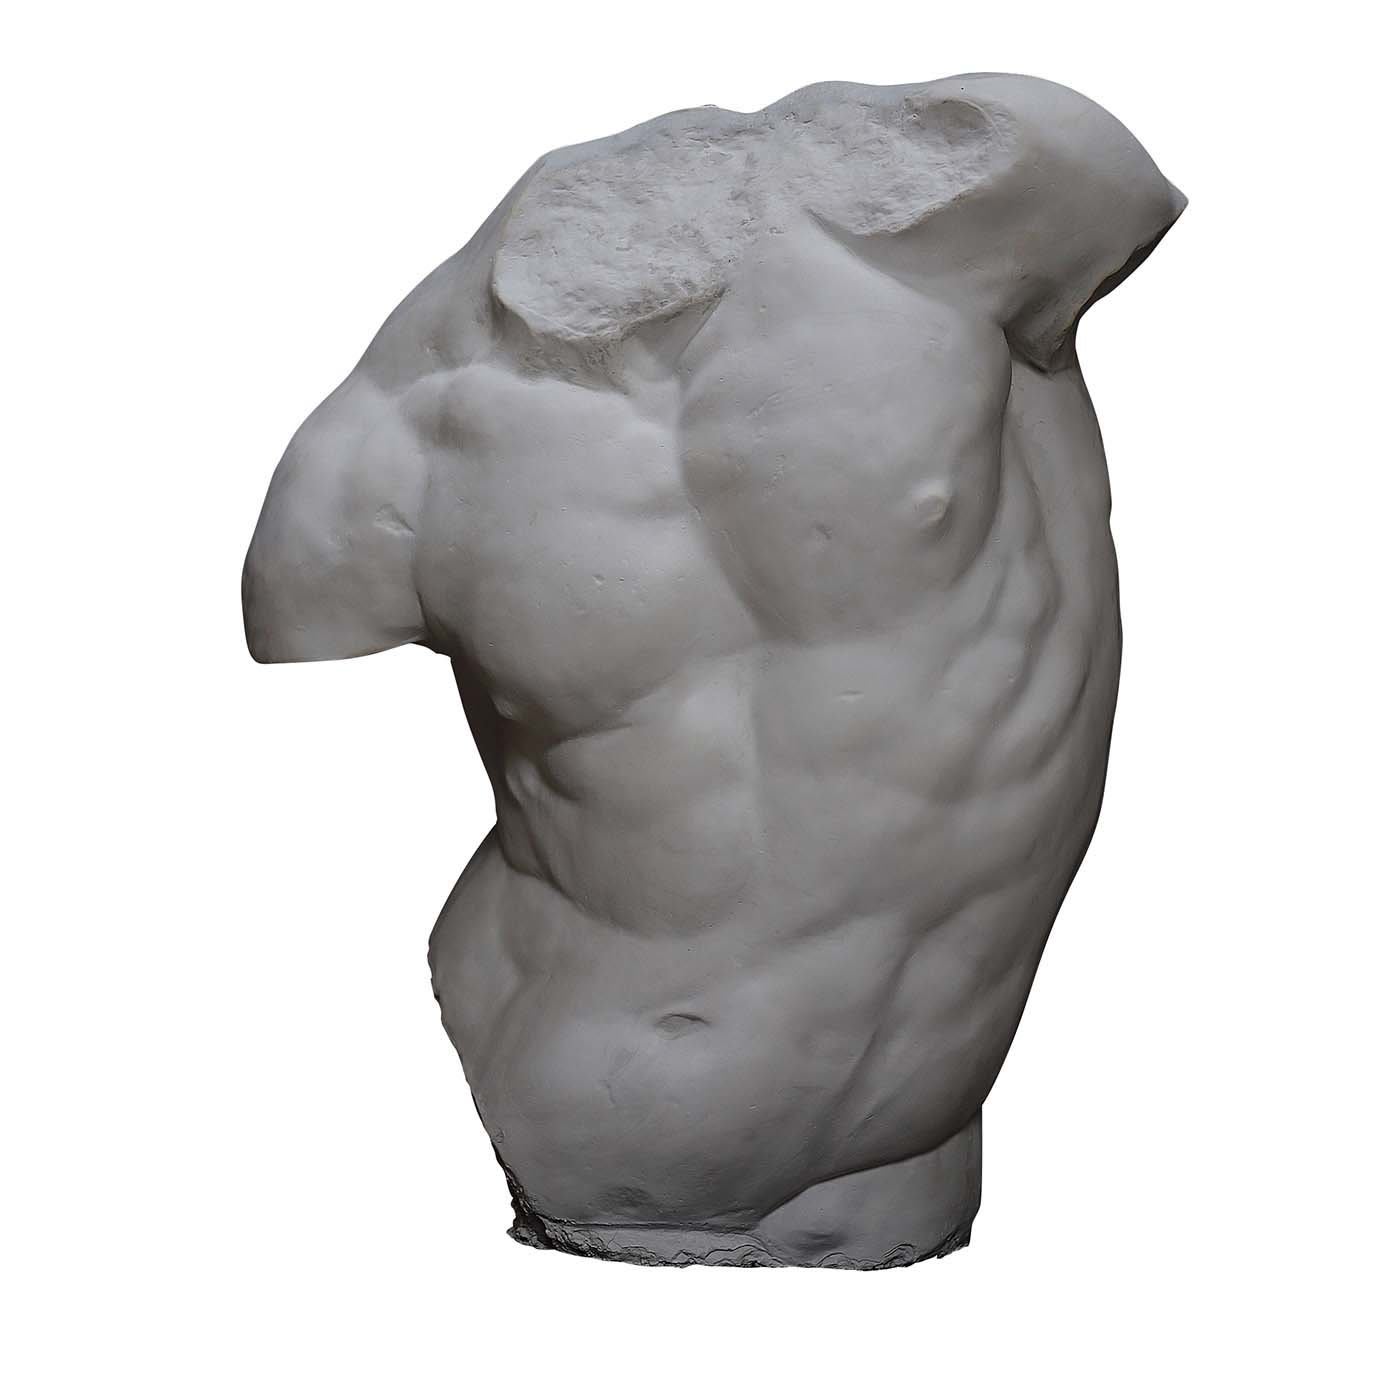 Gaddi Torso Plaster Sculpture - Galleria Romanelli